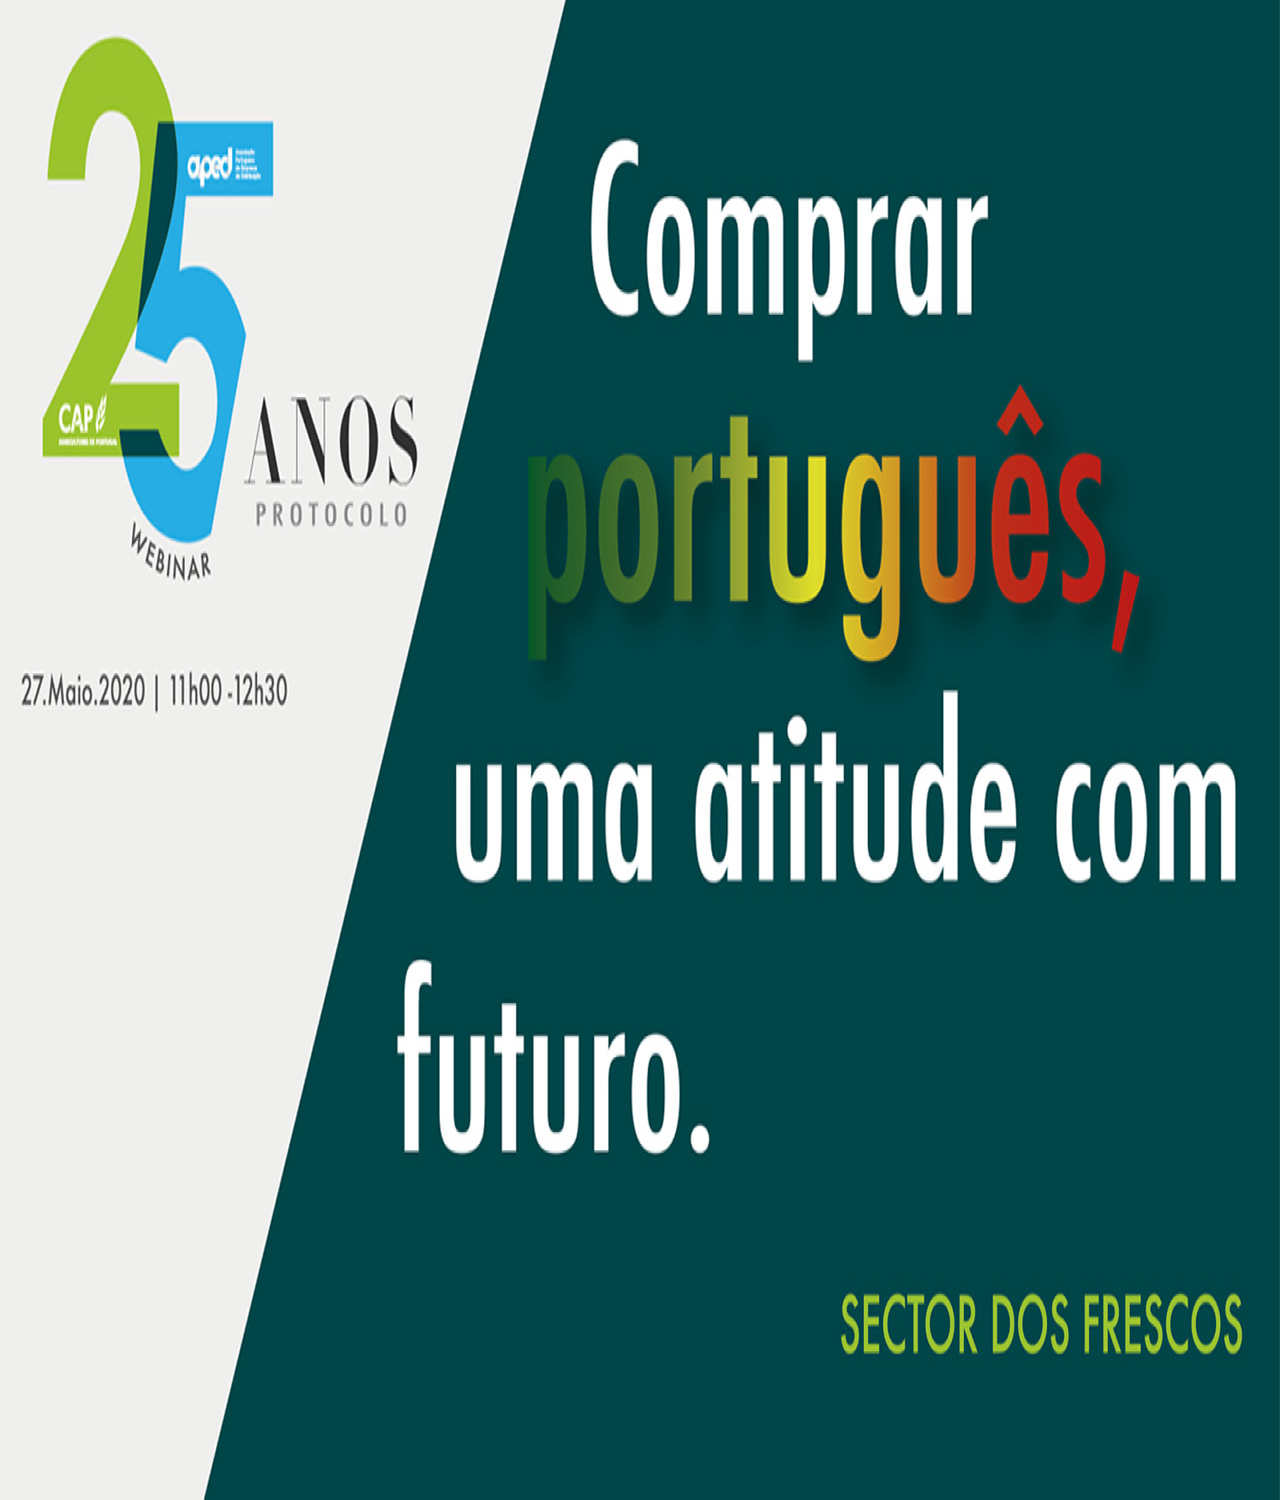 Comprar português, atitude com futuro